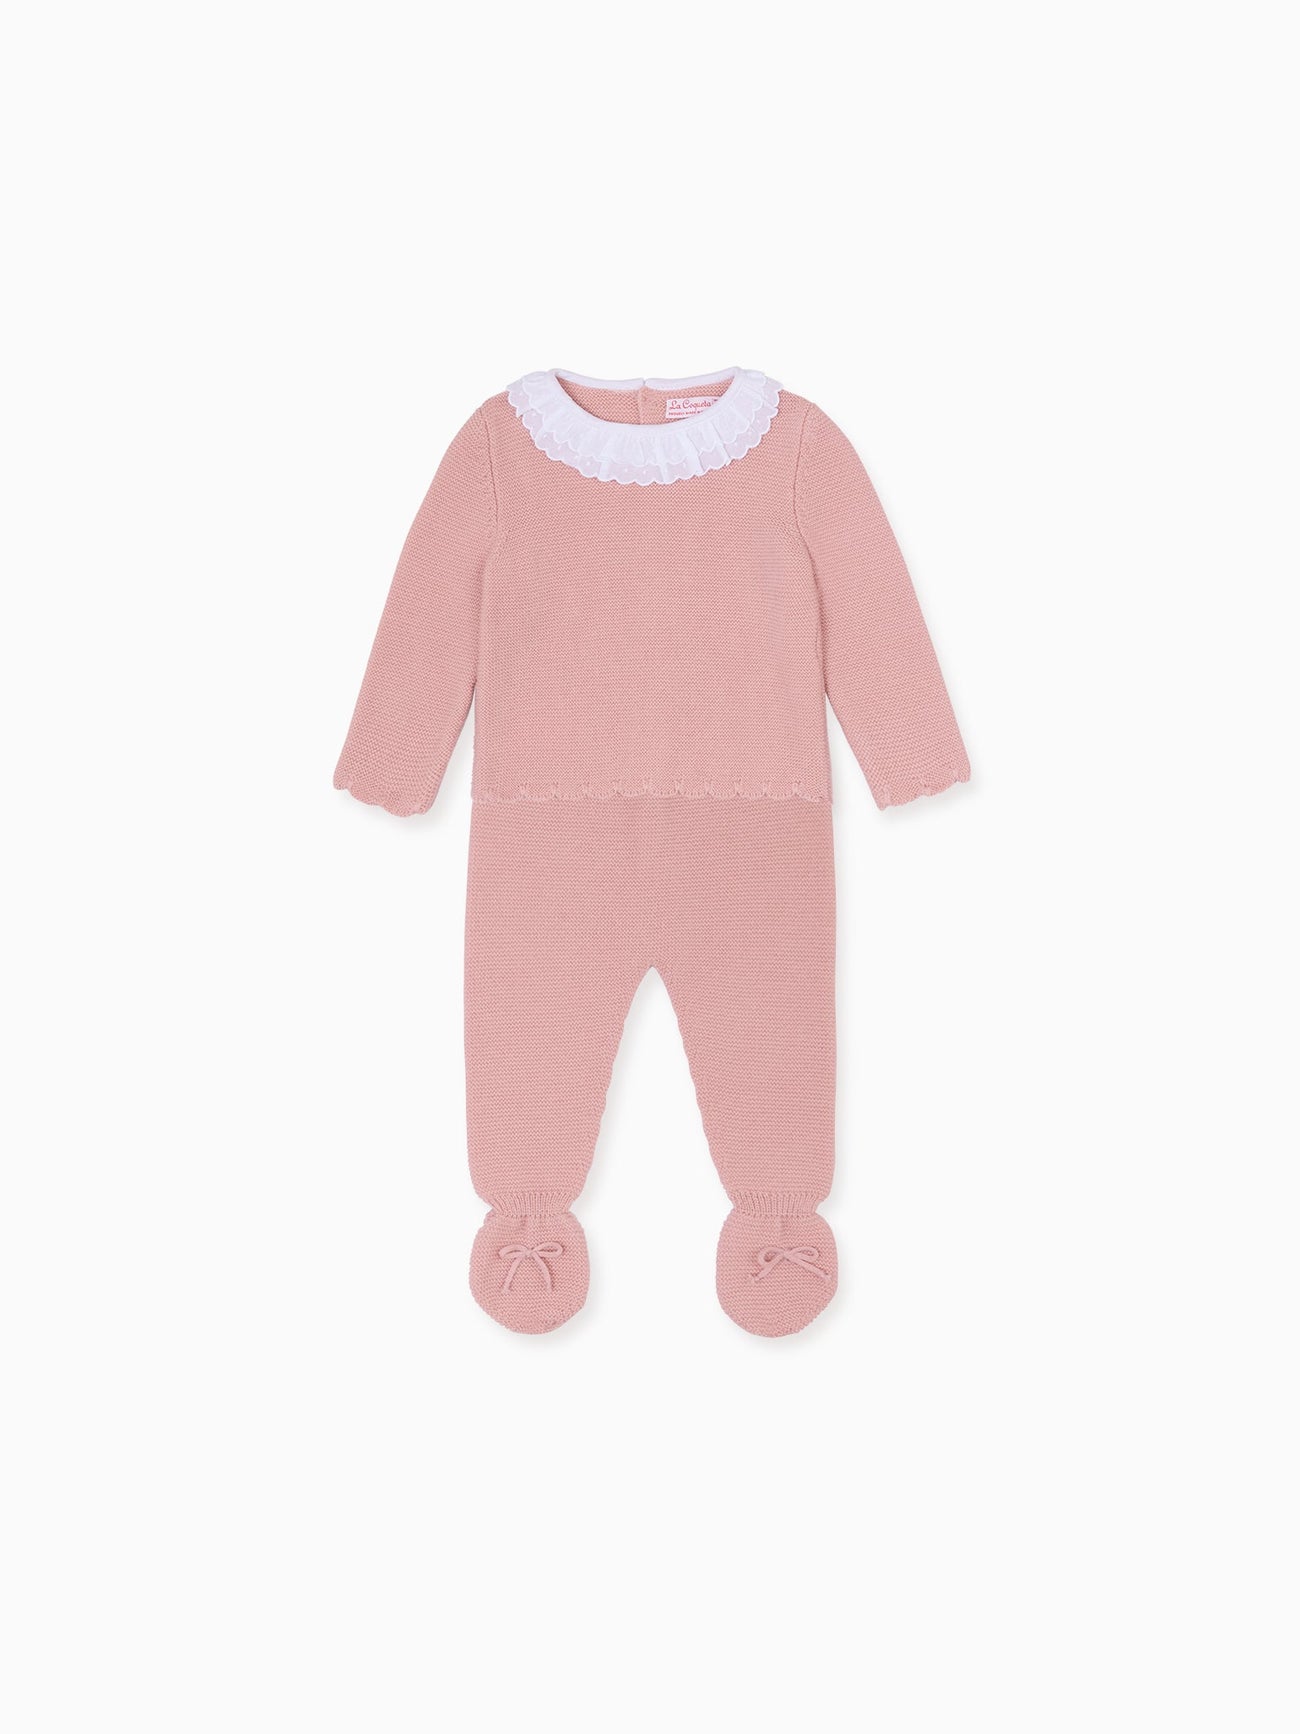 Pink Amaya Merino Baby Girl Knitted Set